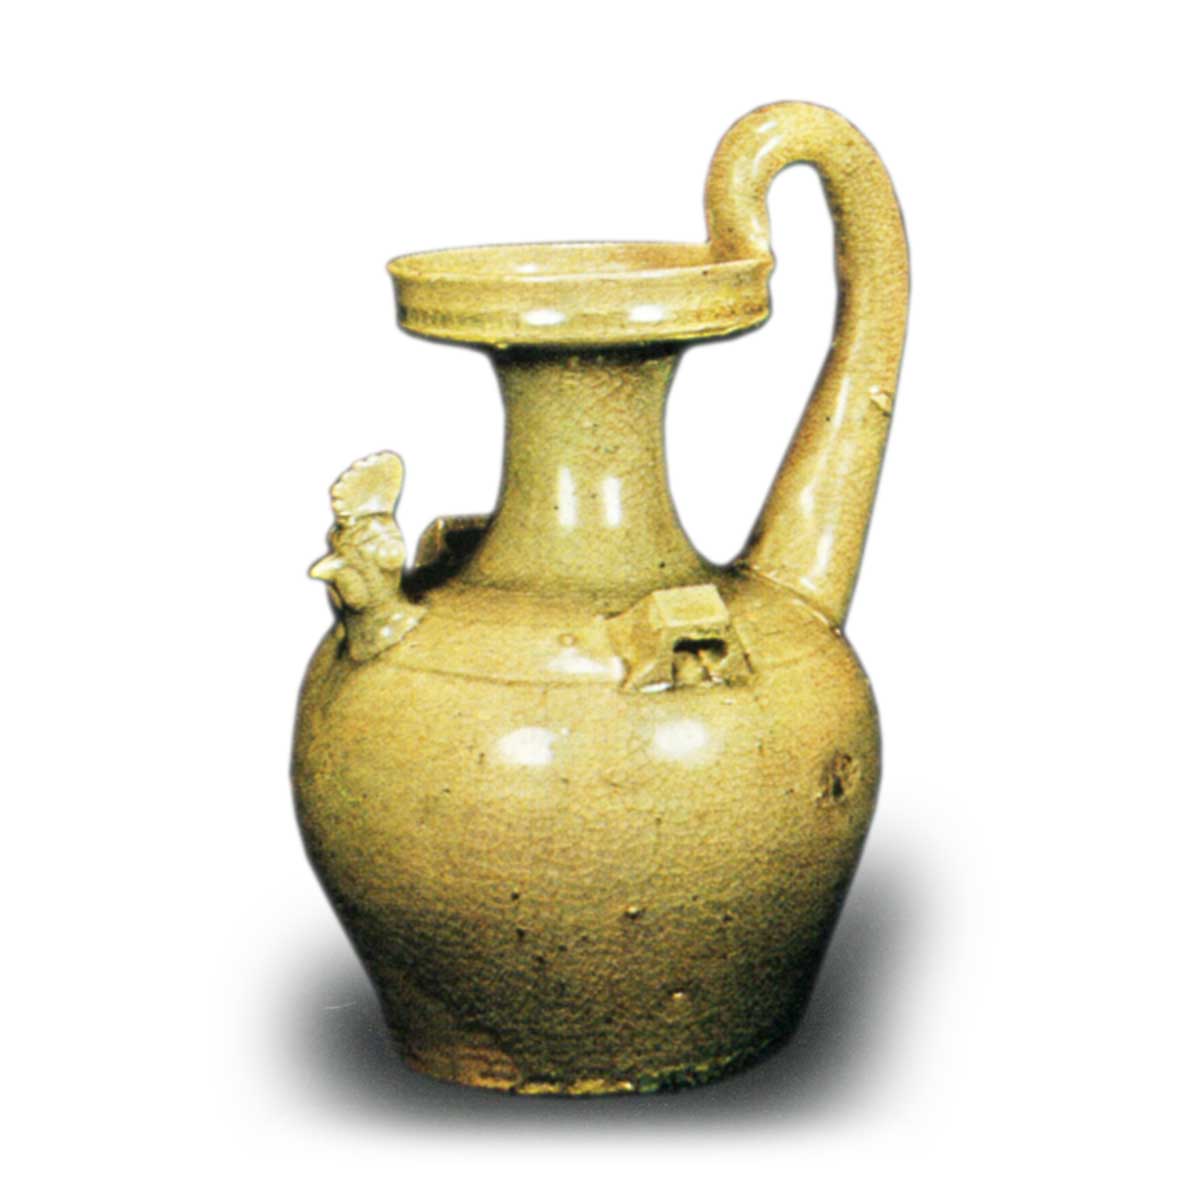 宋代越窯の茶叶の末の釉薬双耳透かし三足の燻製炉から古い模造品が出土